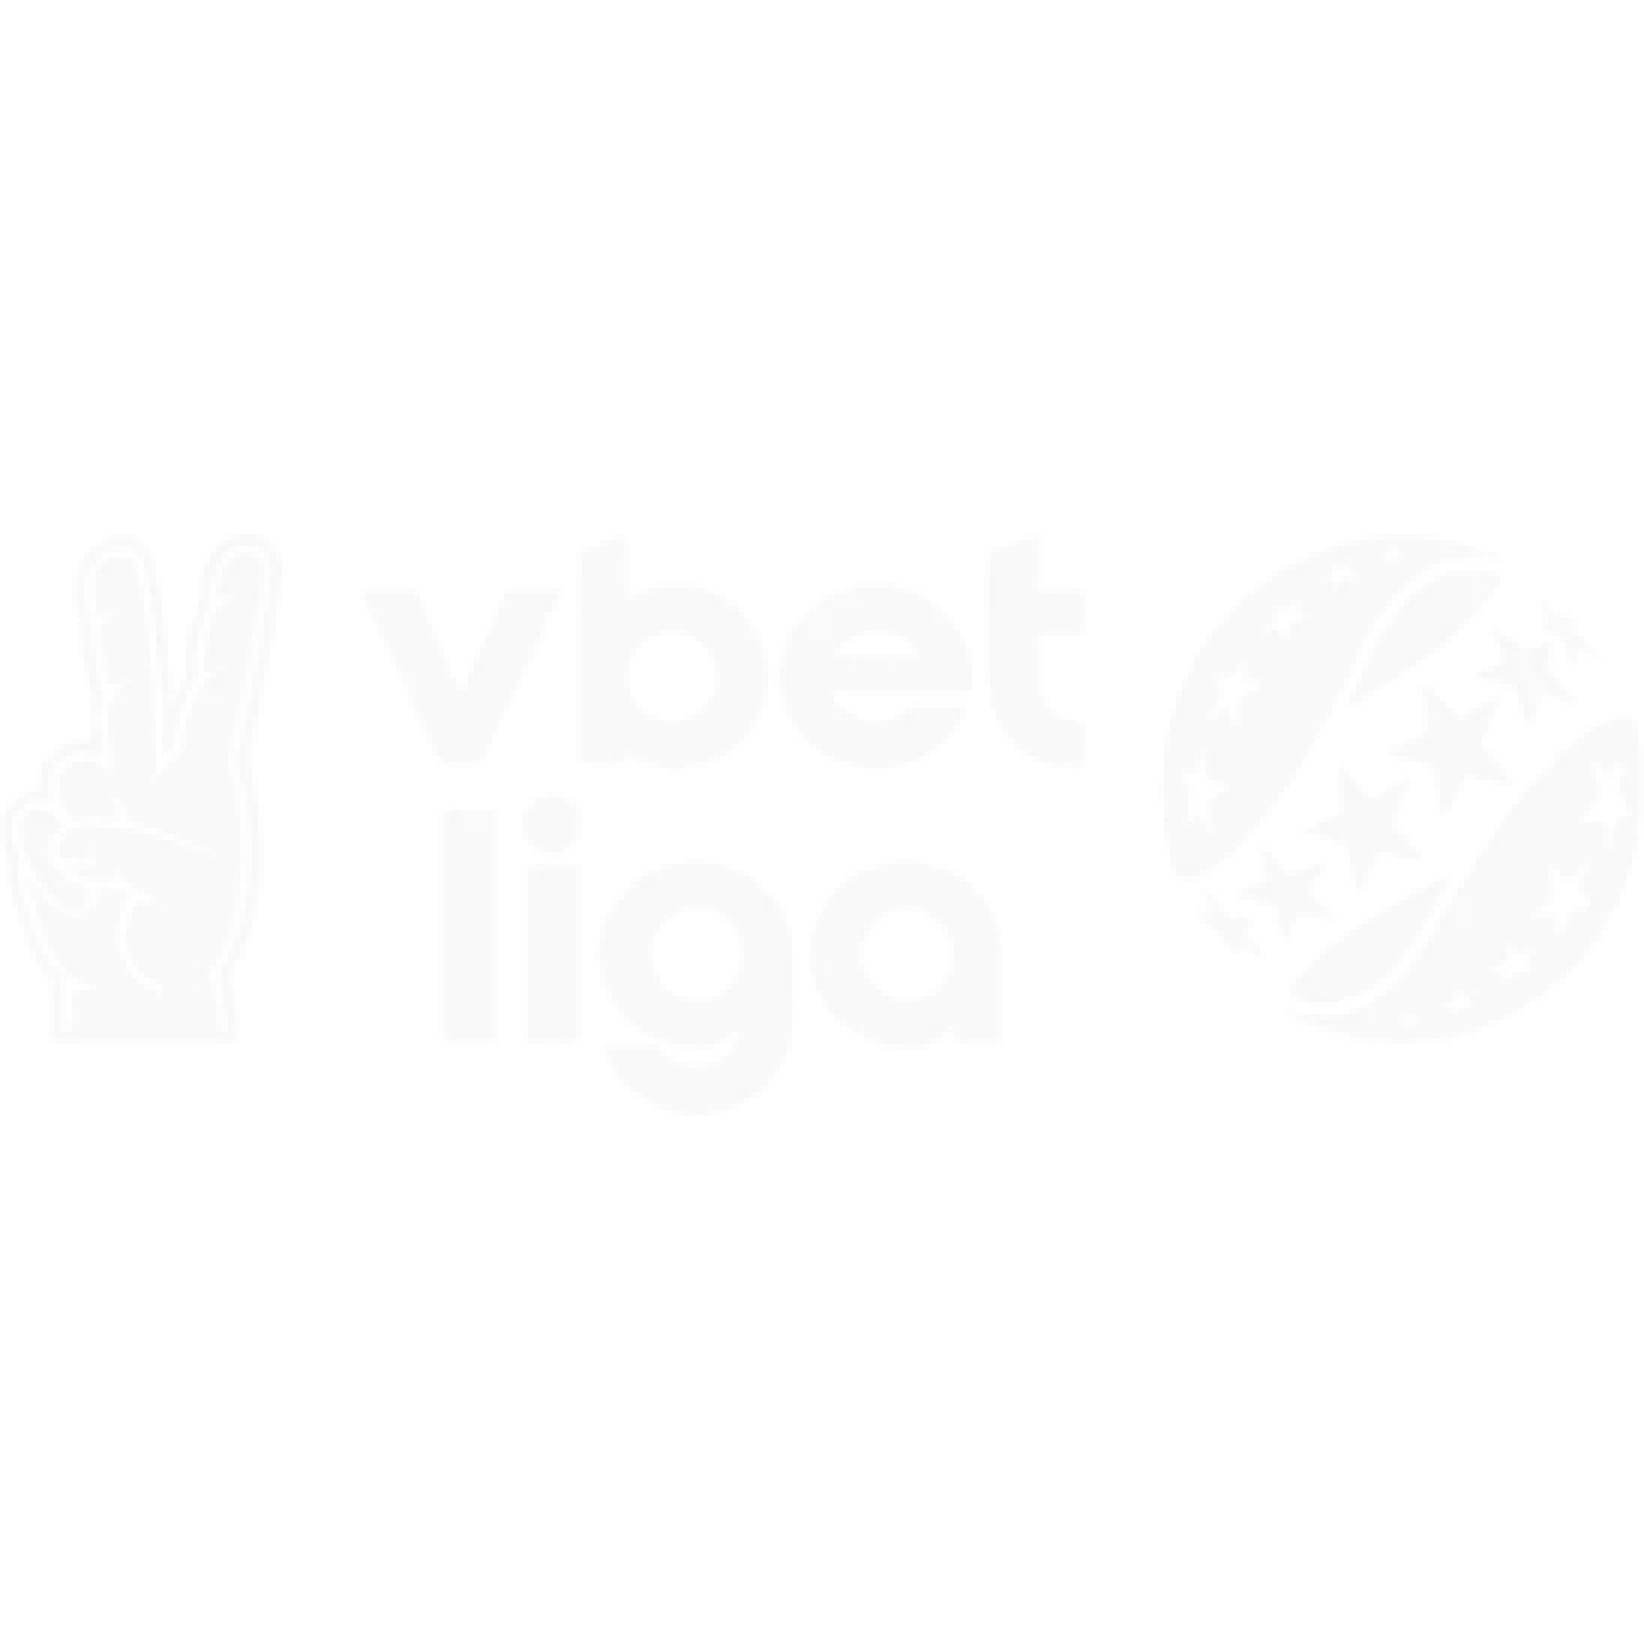 13790-6472-vbet-liga-1-16753386051508.png